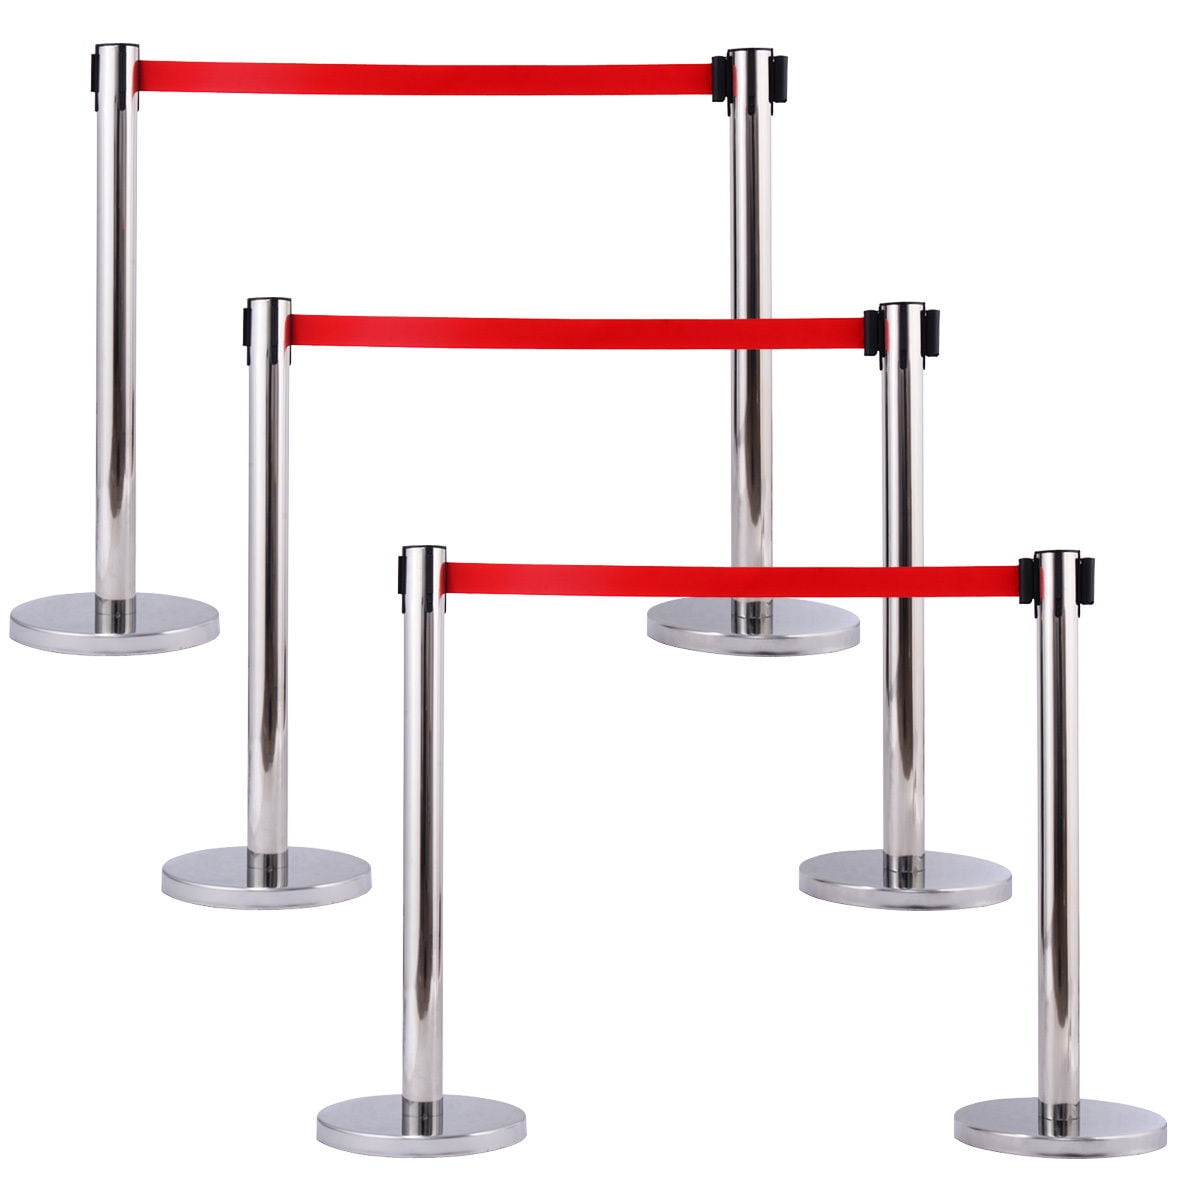 6Pcs Stanchion Posts Queue Pole Retractable Red Belt Crowd Control Barrier New 